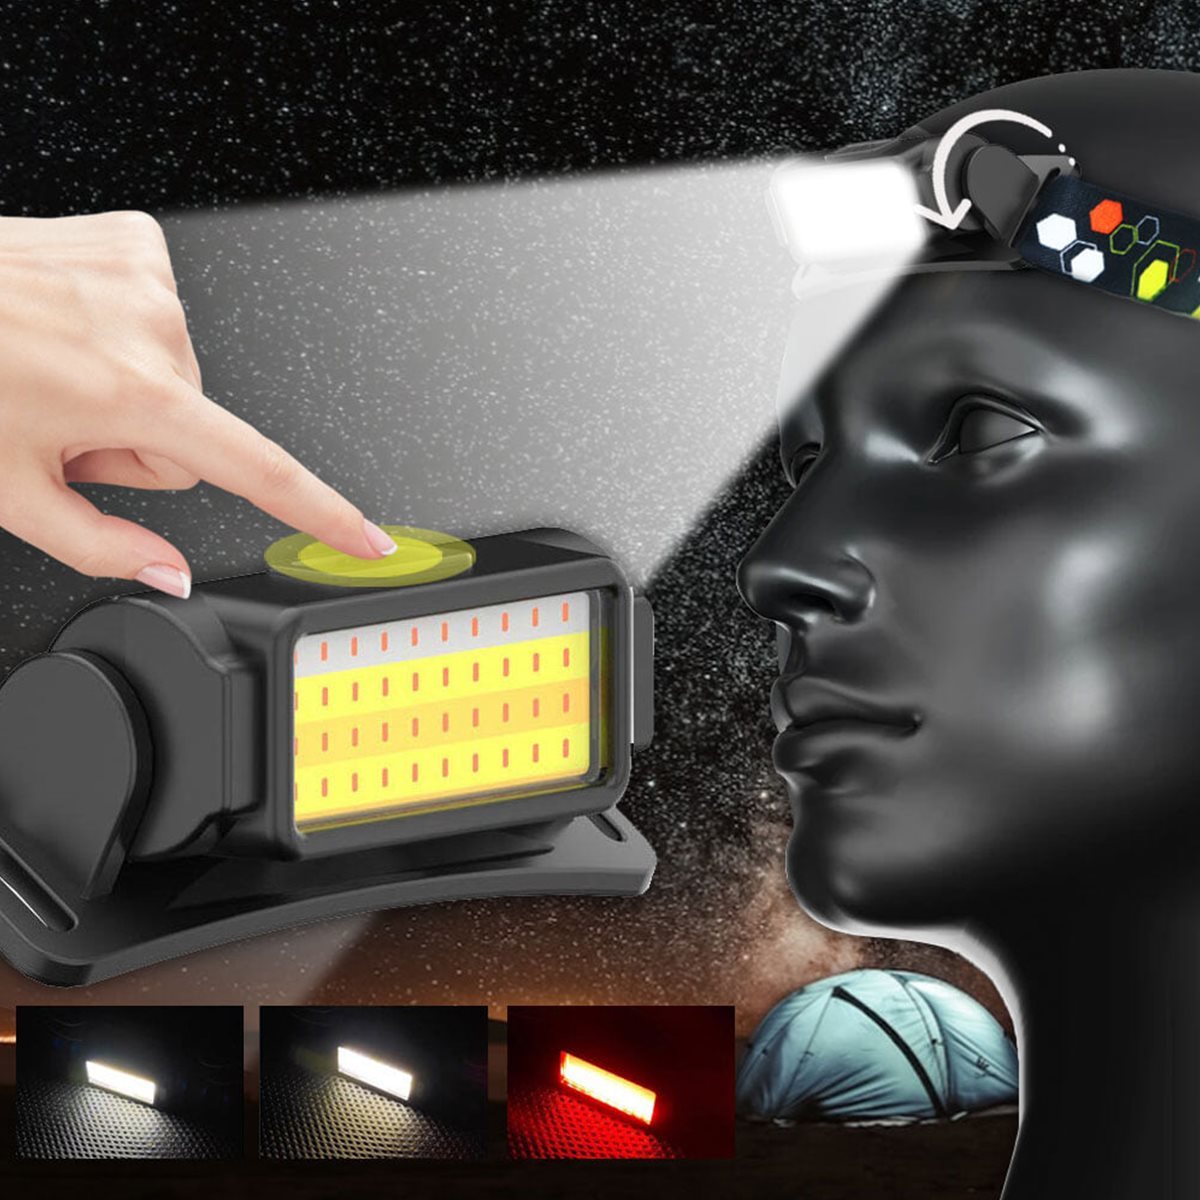 C타입 충전식 LED 헤드랜턴 등산 낚시 해루질 안전모 머리 후레쉬 램프